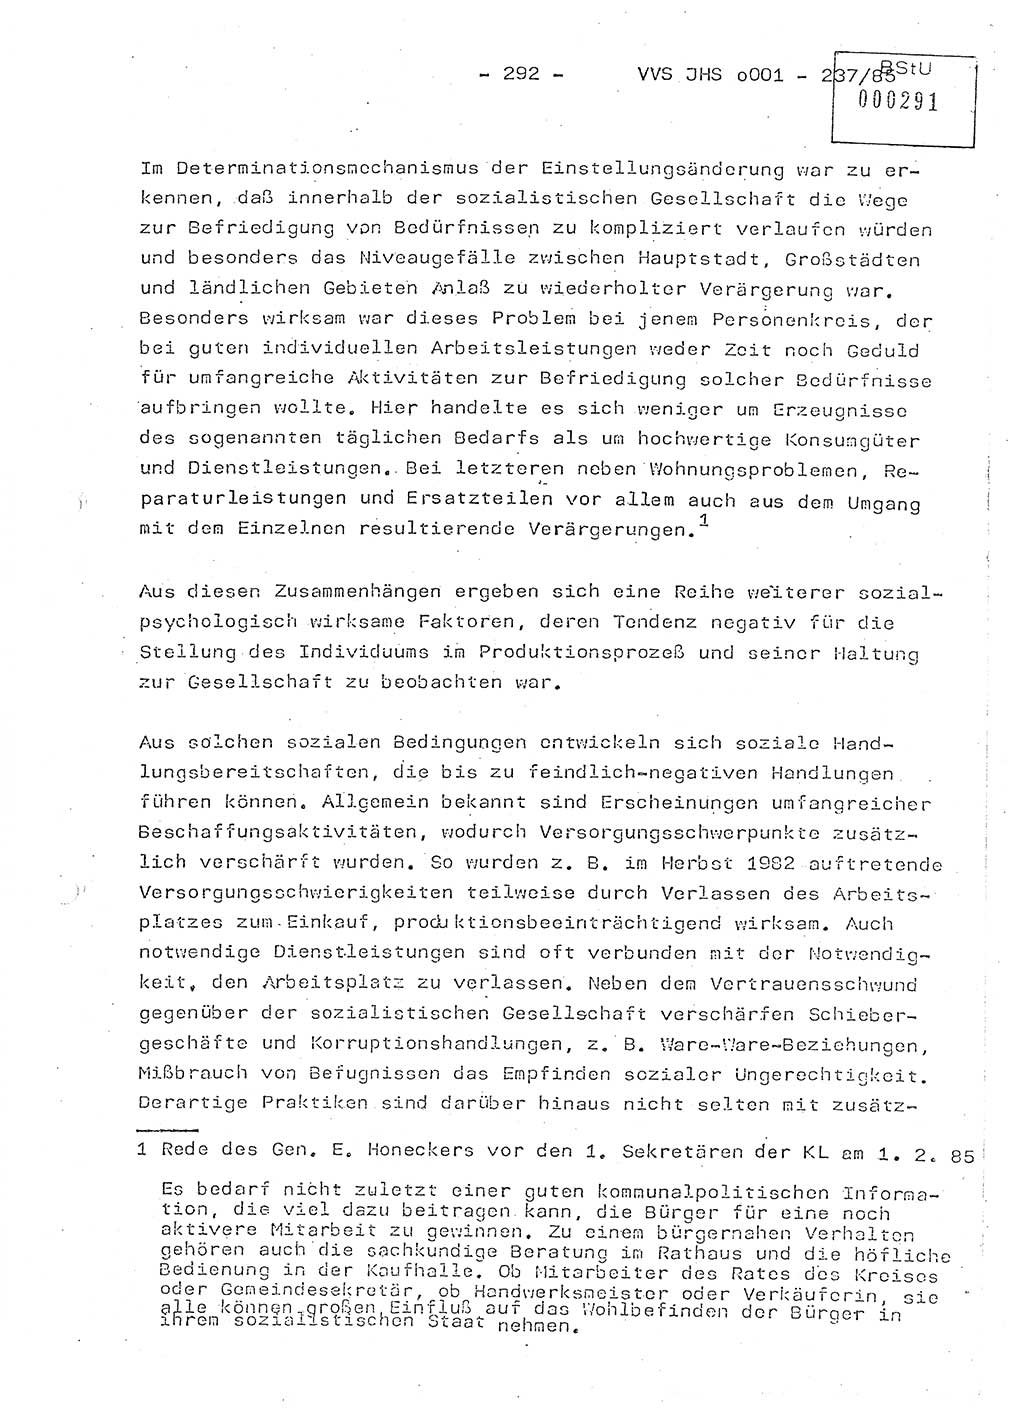 Dissertation Oberstleutnant Peter Jakulski (JHS), Oberstleutnat Christian Rudolph (HA Ⅸ), Major Horst Böttger (ZMD), Major Wolfgang Grüneberg (JHS), Major Albert Meutsch (JHS), Ministerium für Staatssicherheit (MfS) [Deutsche Demokratische Republik (DDR)], Juristische Hochschule (JHS), Vertrauliche Verschlußsache (VVS) o001-237/85, Potsdam 1985, Seite 292 (Diss. MfS DDR JHS VVS o001-237/85 1985, S. 292)